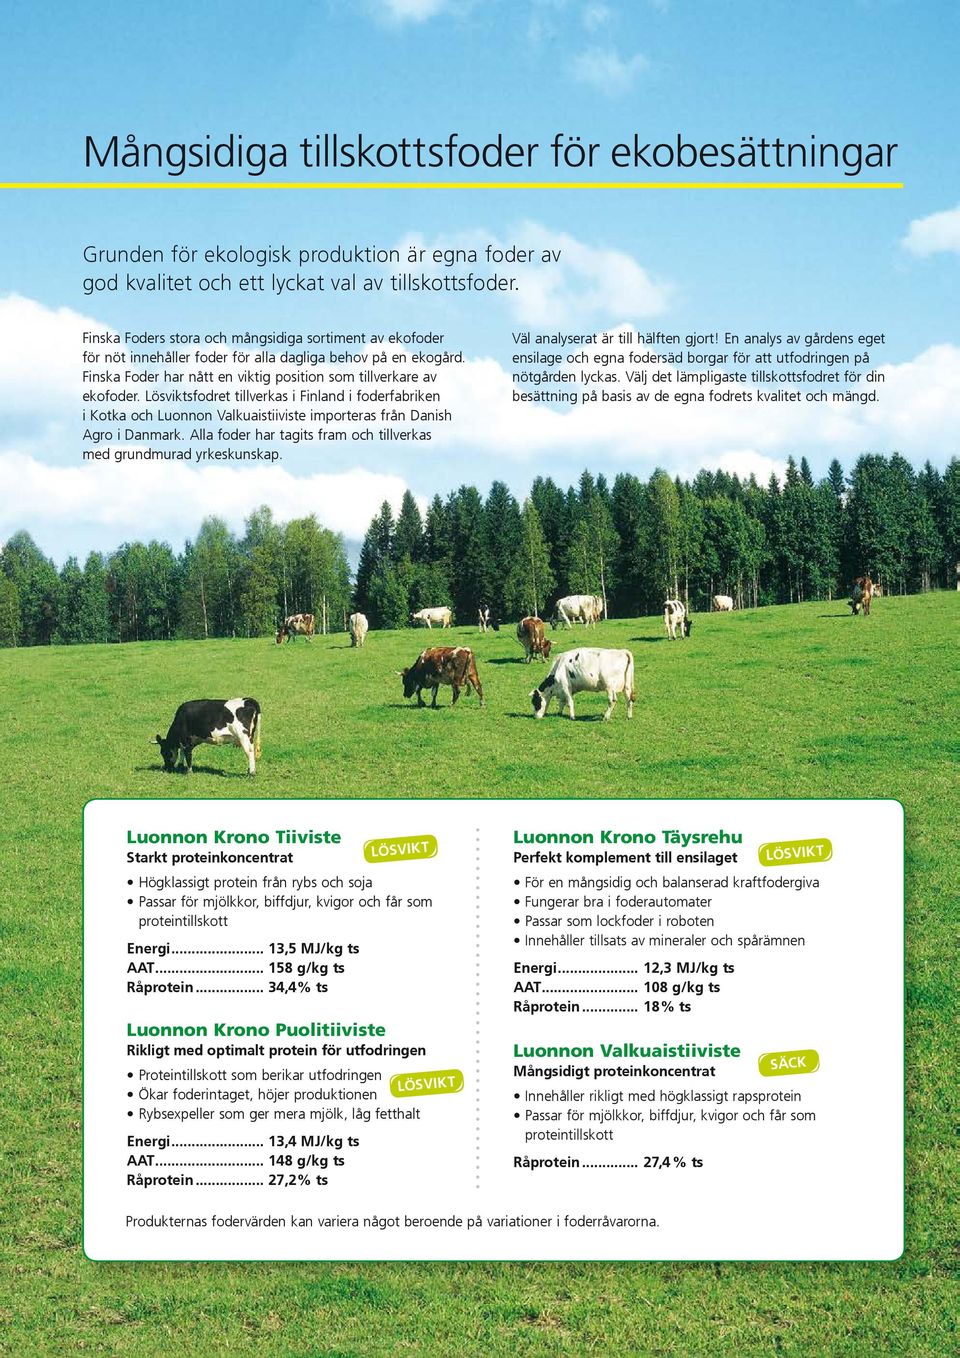 Lösviktsfodret tillverkas i Finland i foderfabriken i Kotka och Luonnon Valkuaistiiviste importeras från Danish Agro i Danmark. Alla foder har tagits fram och tillverkas med grundmurad yrkeskunskap.